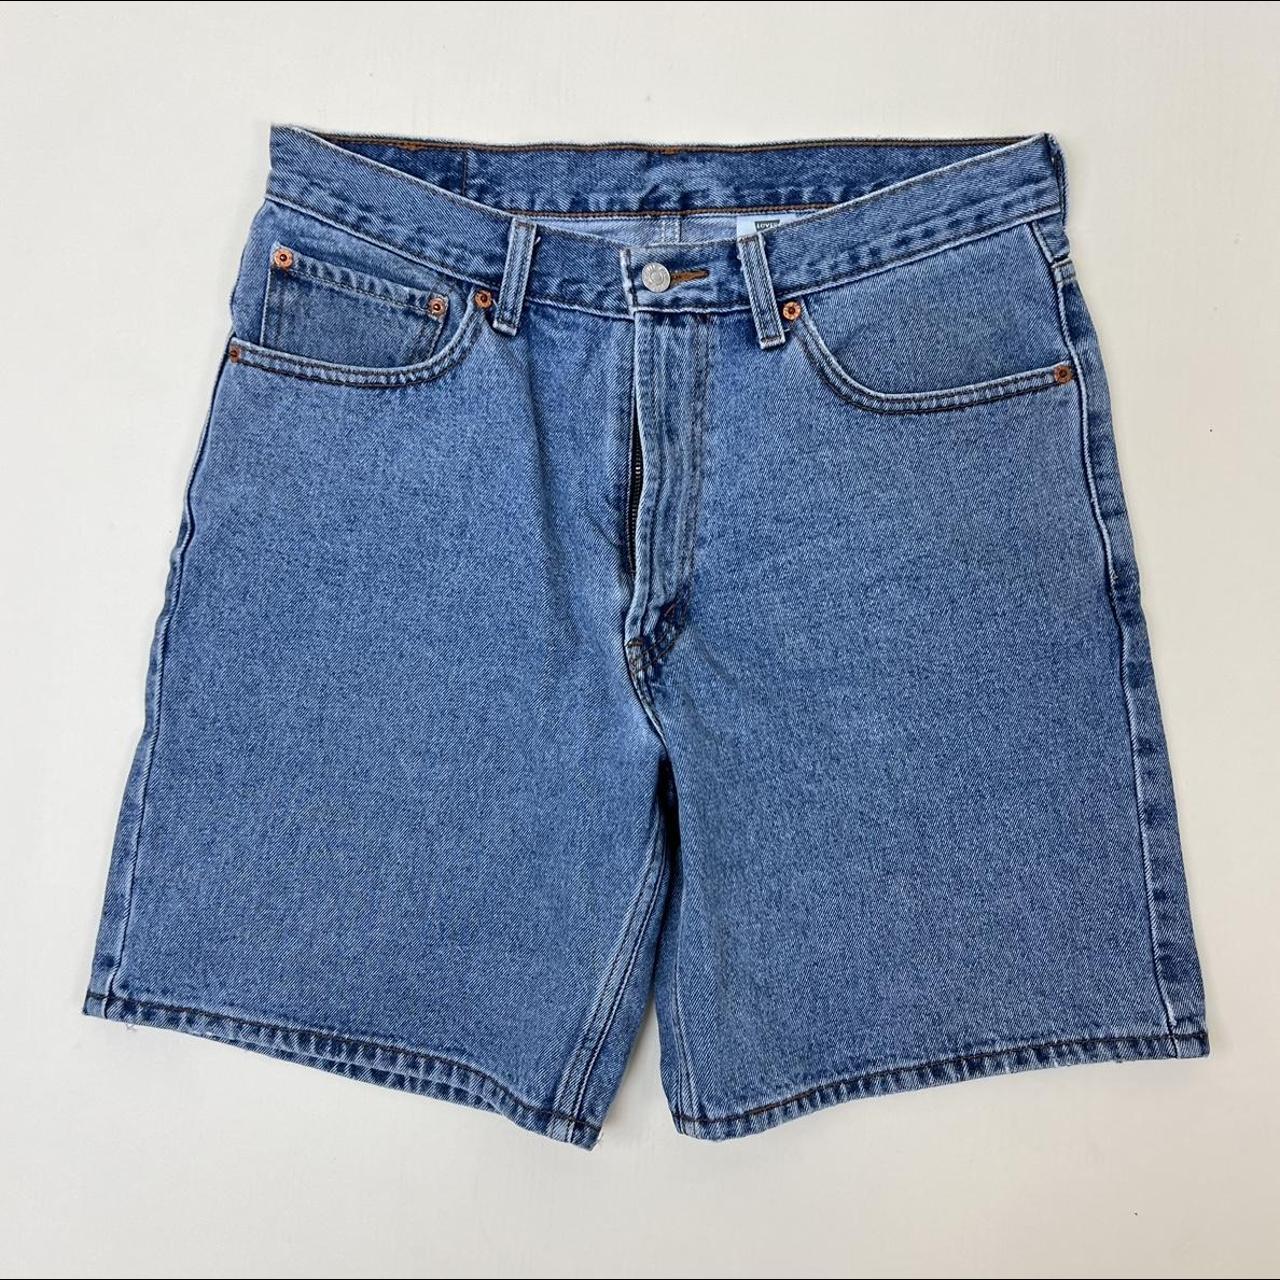 Levi’s 550 light wash jean shorts Vintage... - Depop